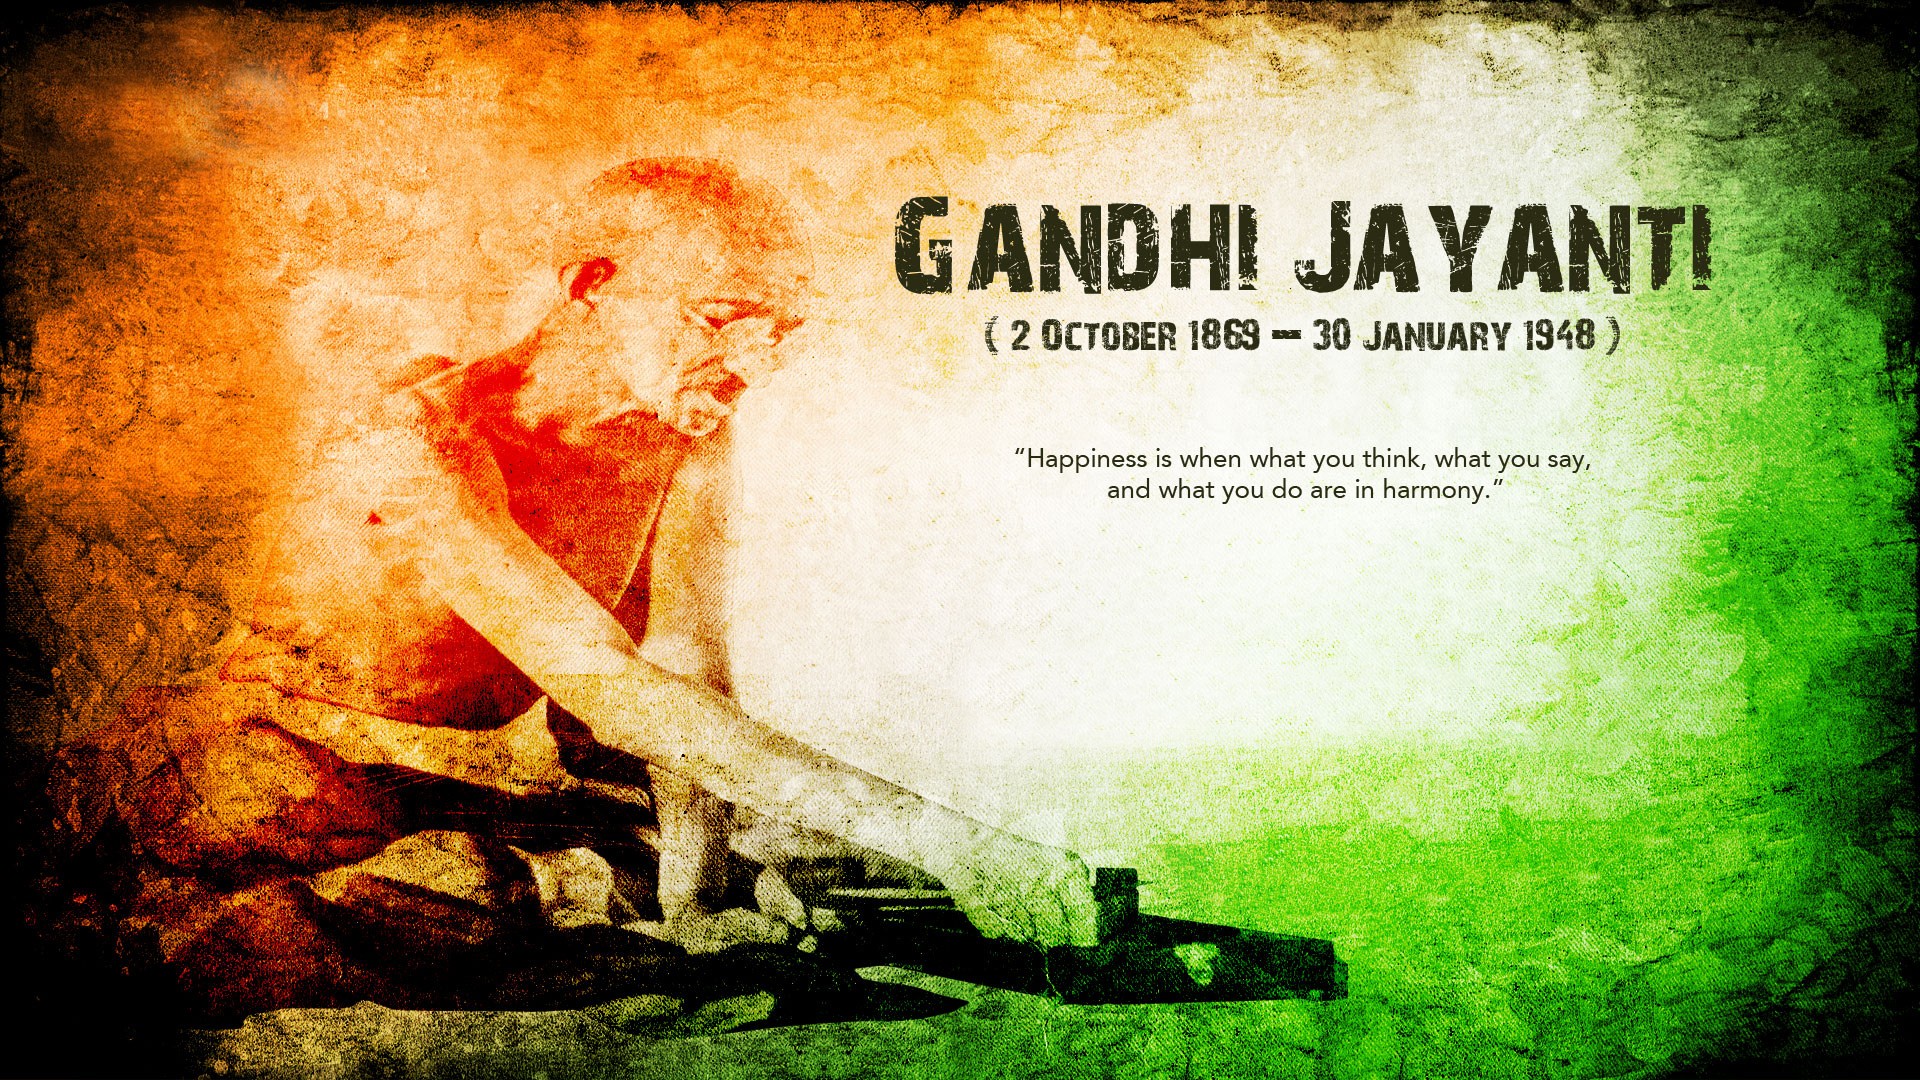 Mahatma Gandhi Jayanthi Image Full Photo Wallpaper